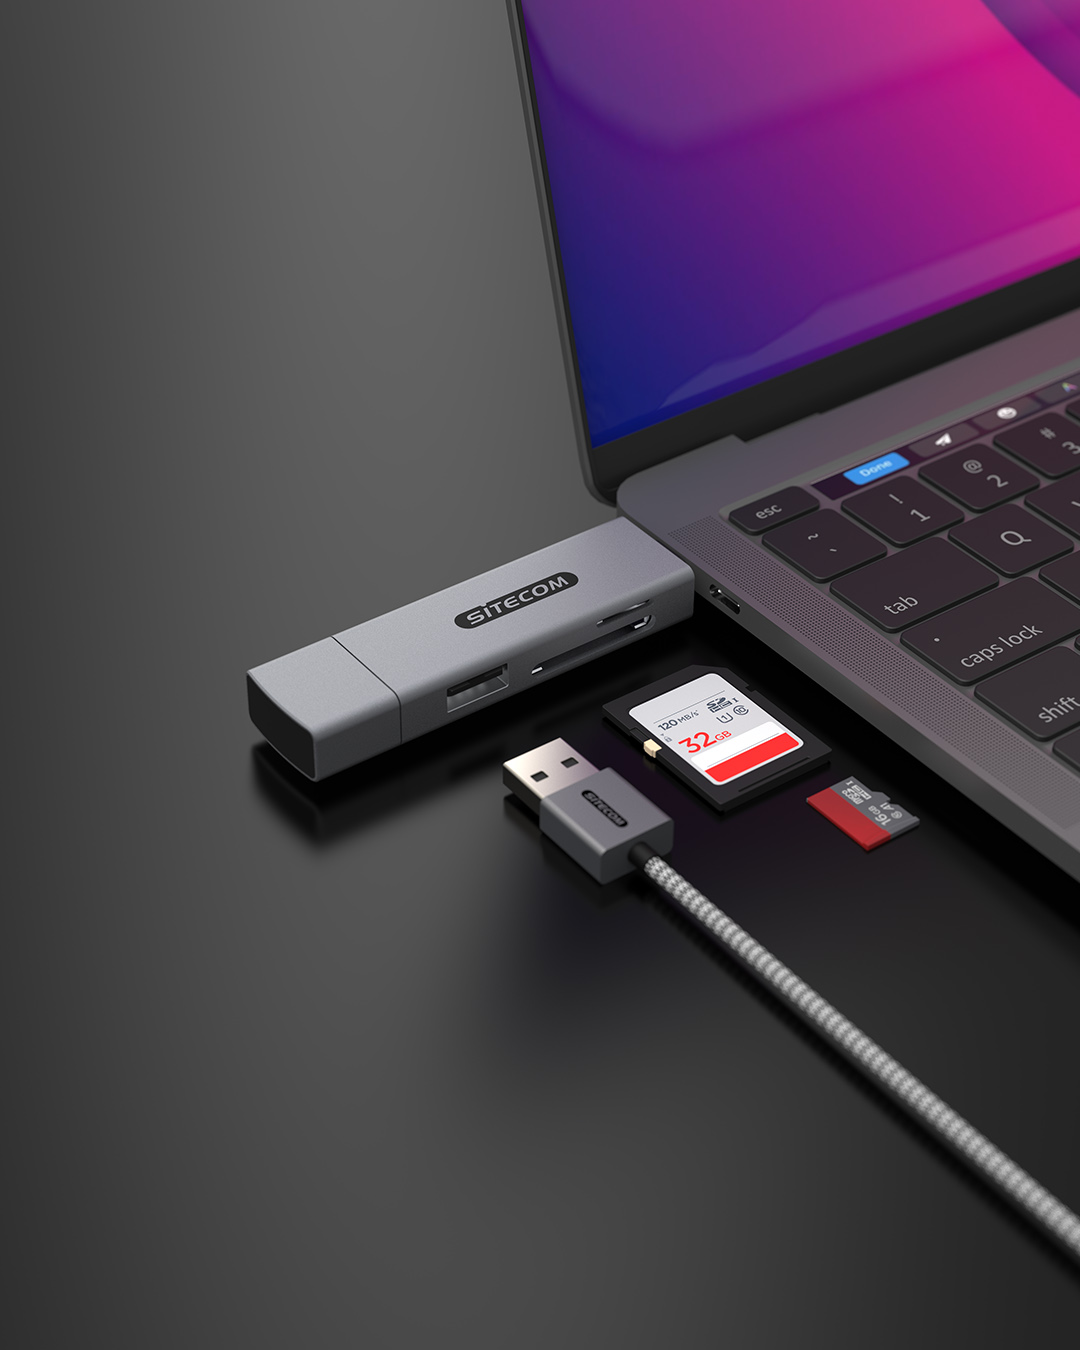 Sitecom - USB-A + USB-C Stick Card Reader with USB Port - MD-1012